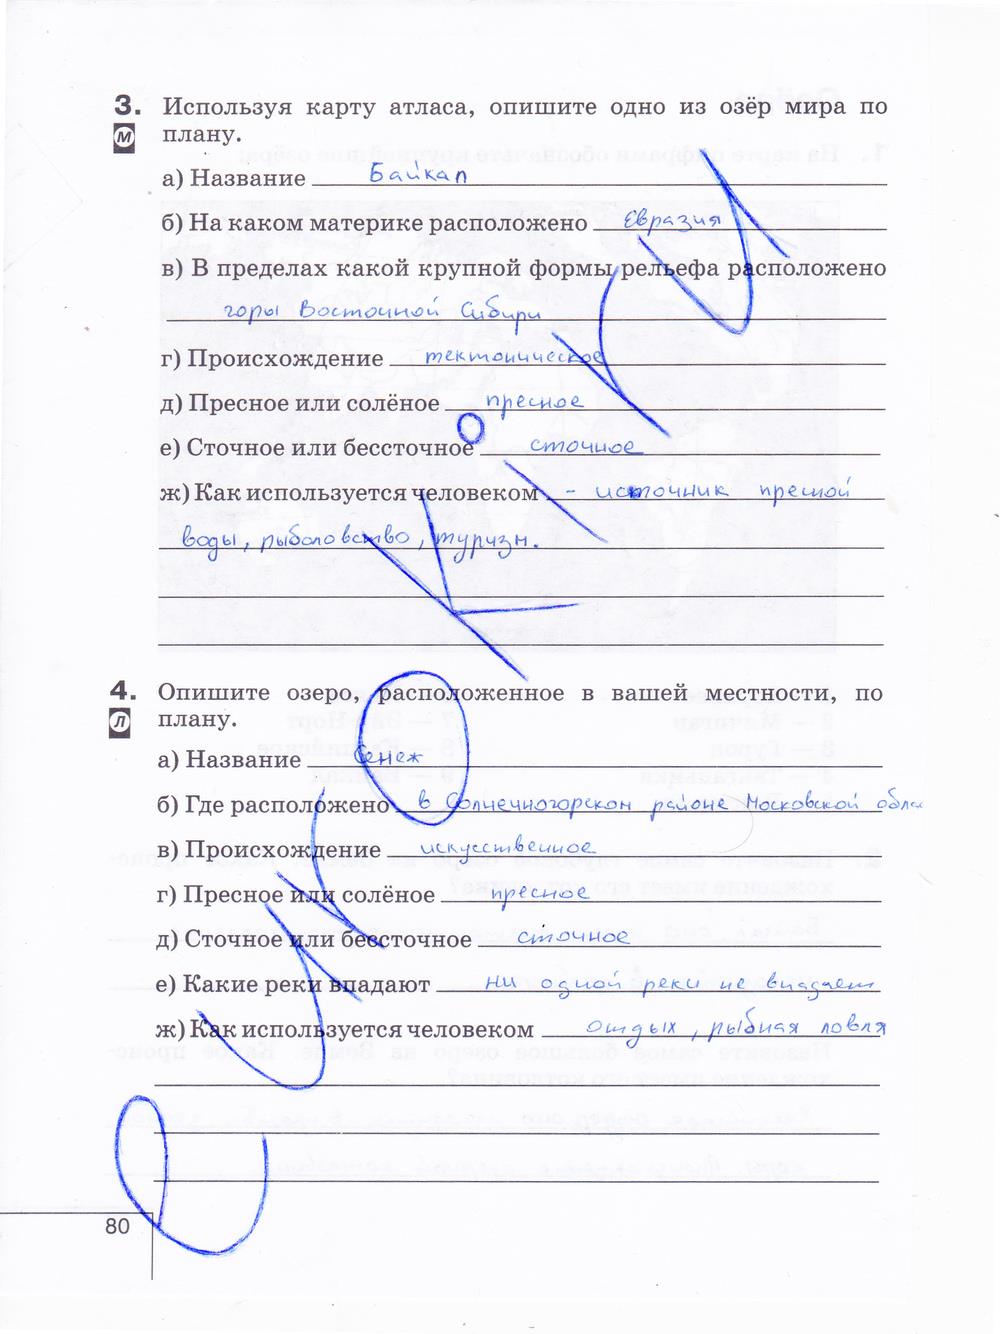 гдз 6 класс рабочая тетрадь страница 80 география Карташева, Курчина